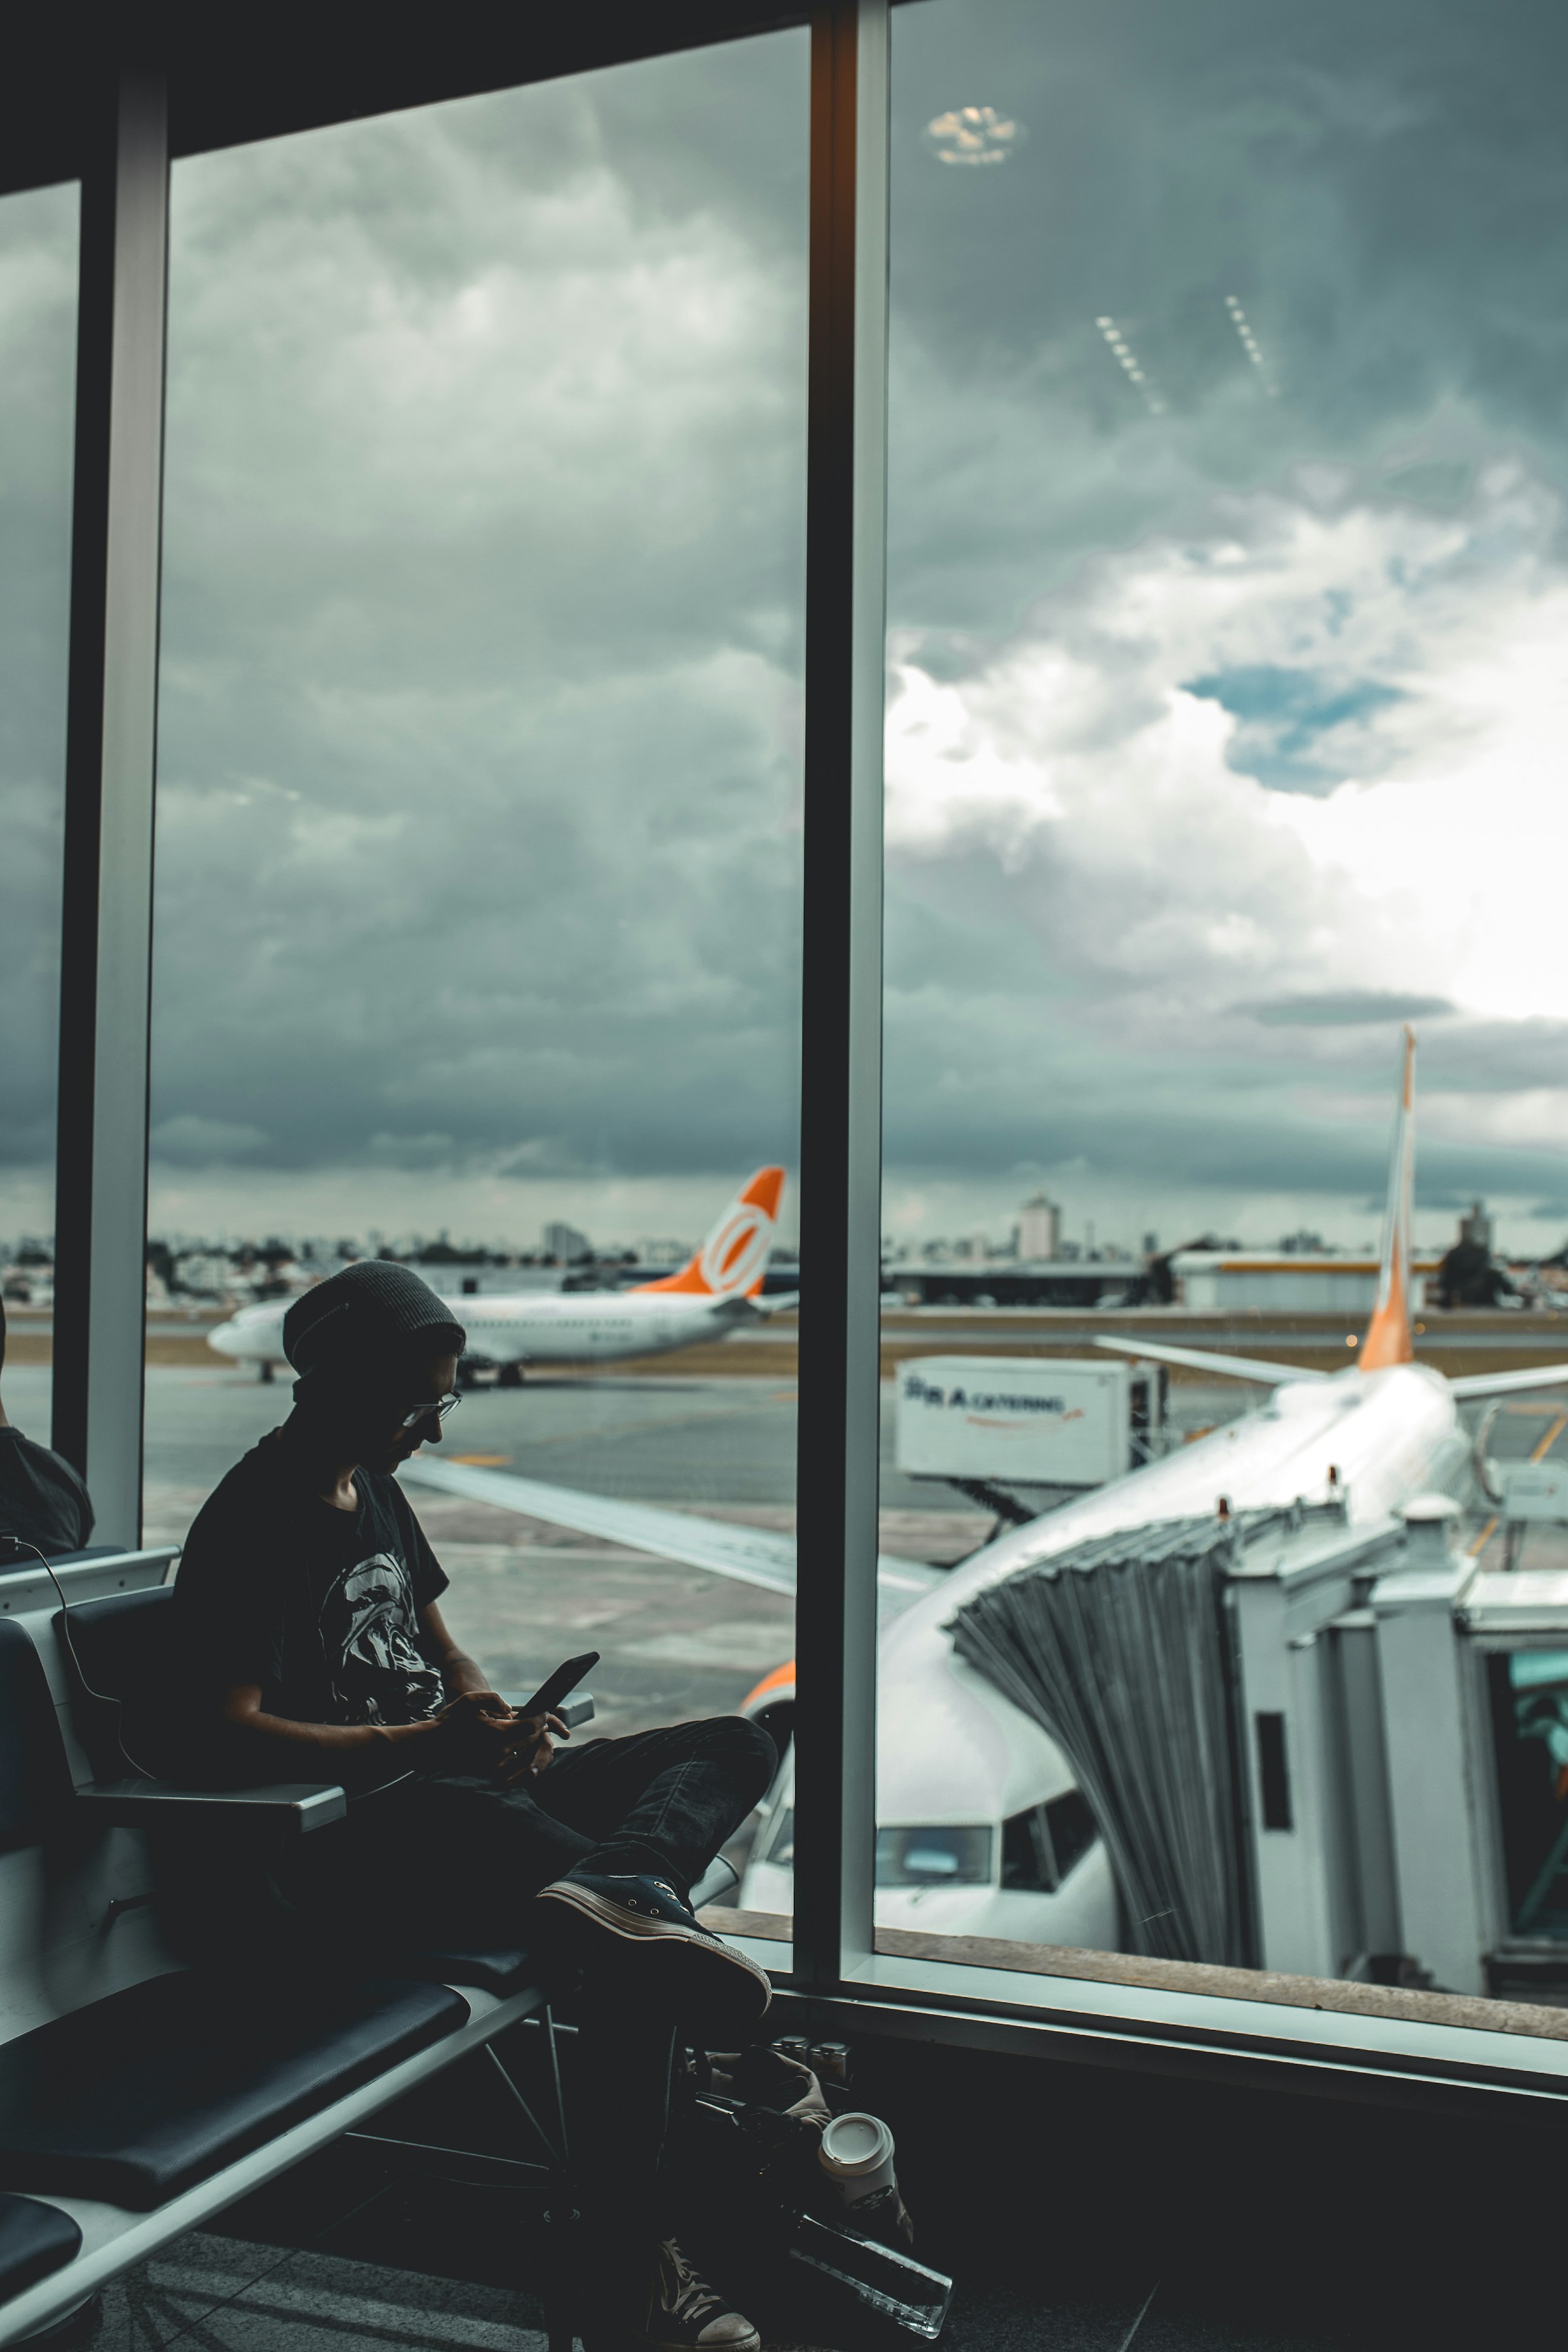 Une personne assise à l'aéroport | Source : Unsplash